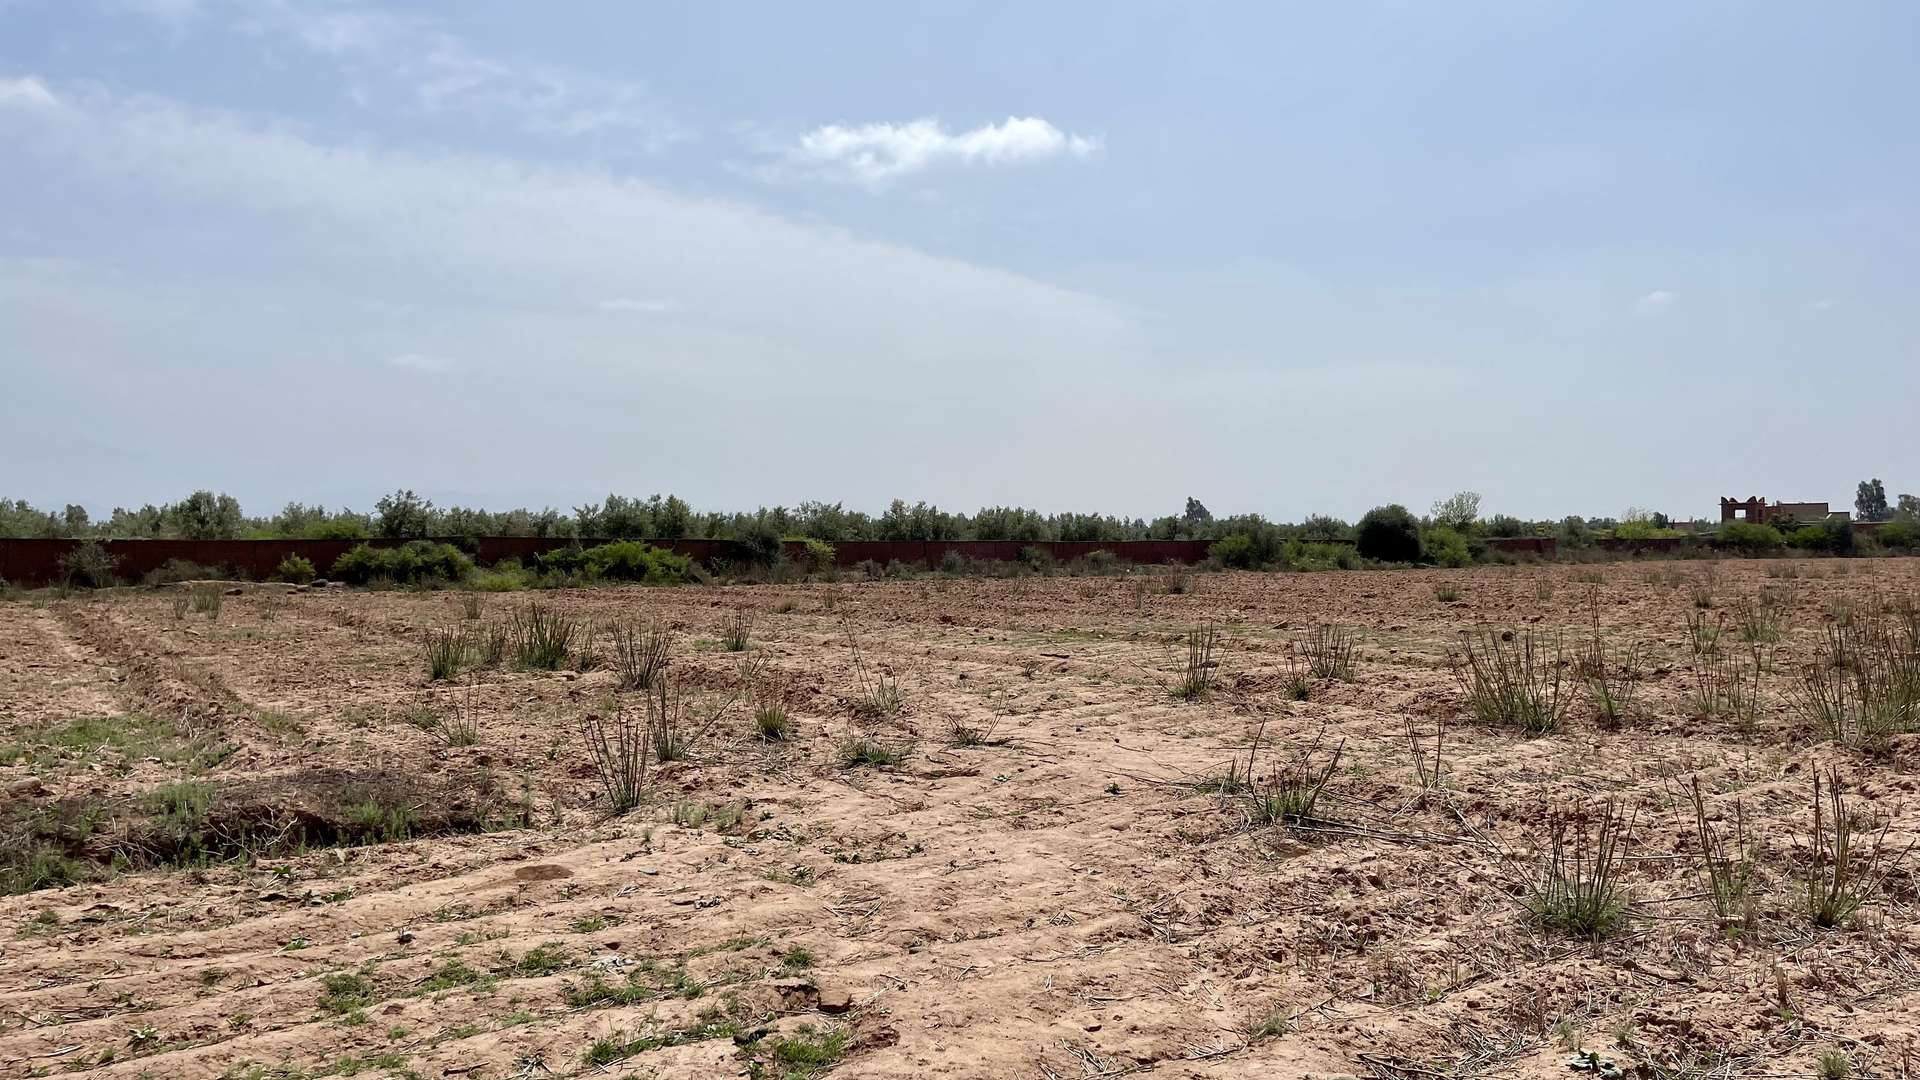 Vente,Terrains & Fermes,Lot de terrain titré 4 ha à Ghmate 28km du centre de Marrakech,Marrakech,Route de l'Ourika